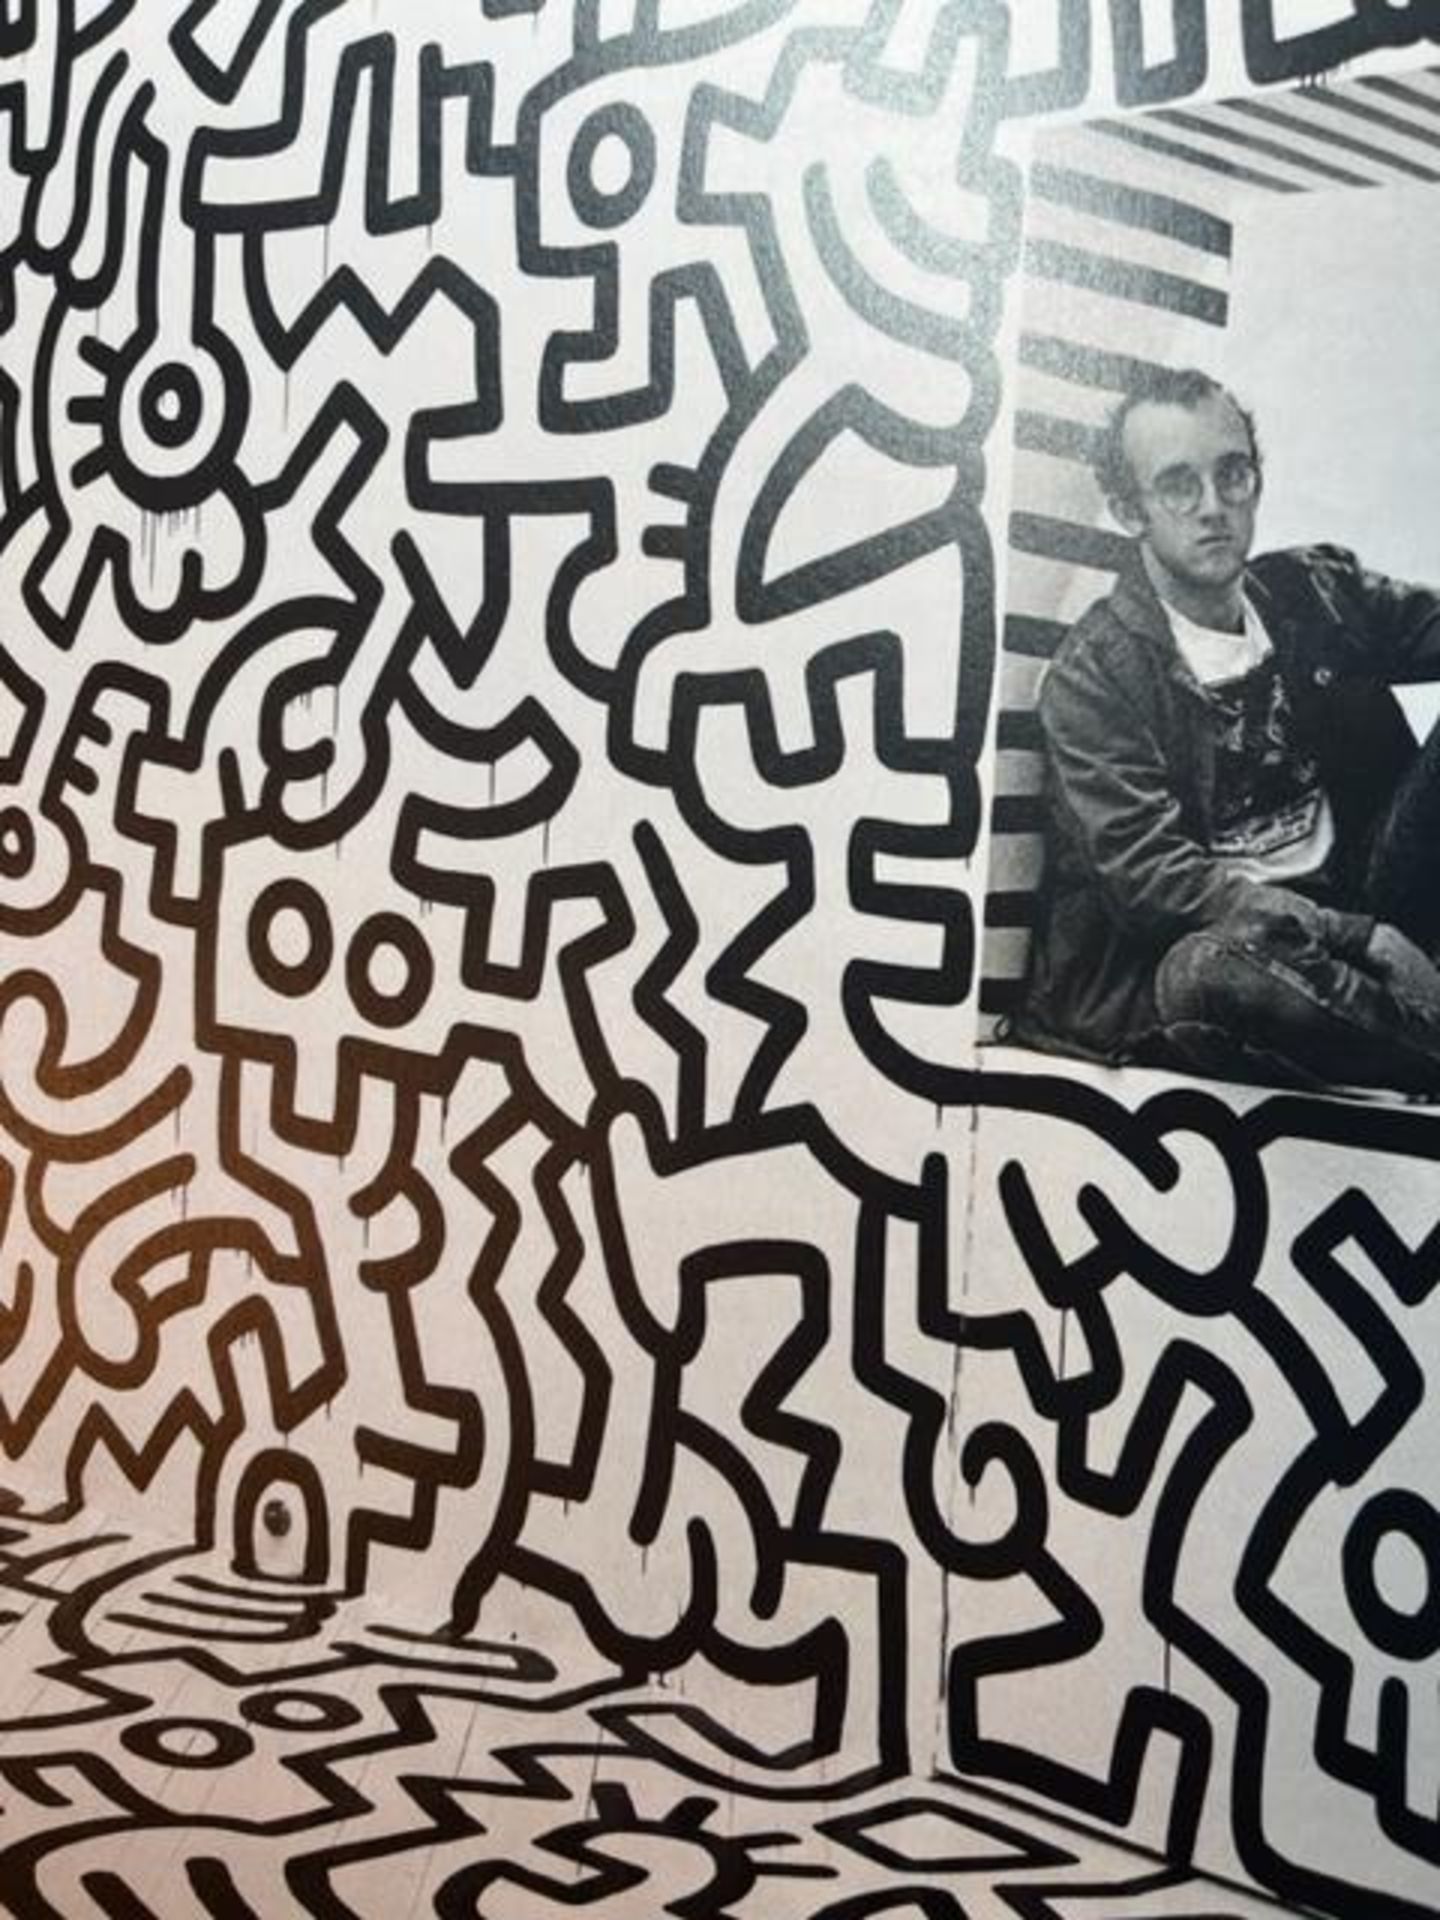 Keith Haring "Pop Shop" Print. - Bild 3 aus 6